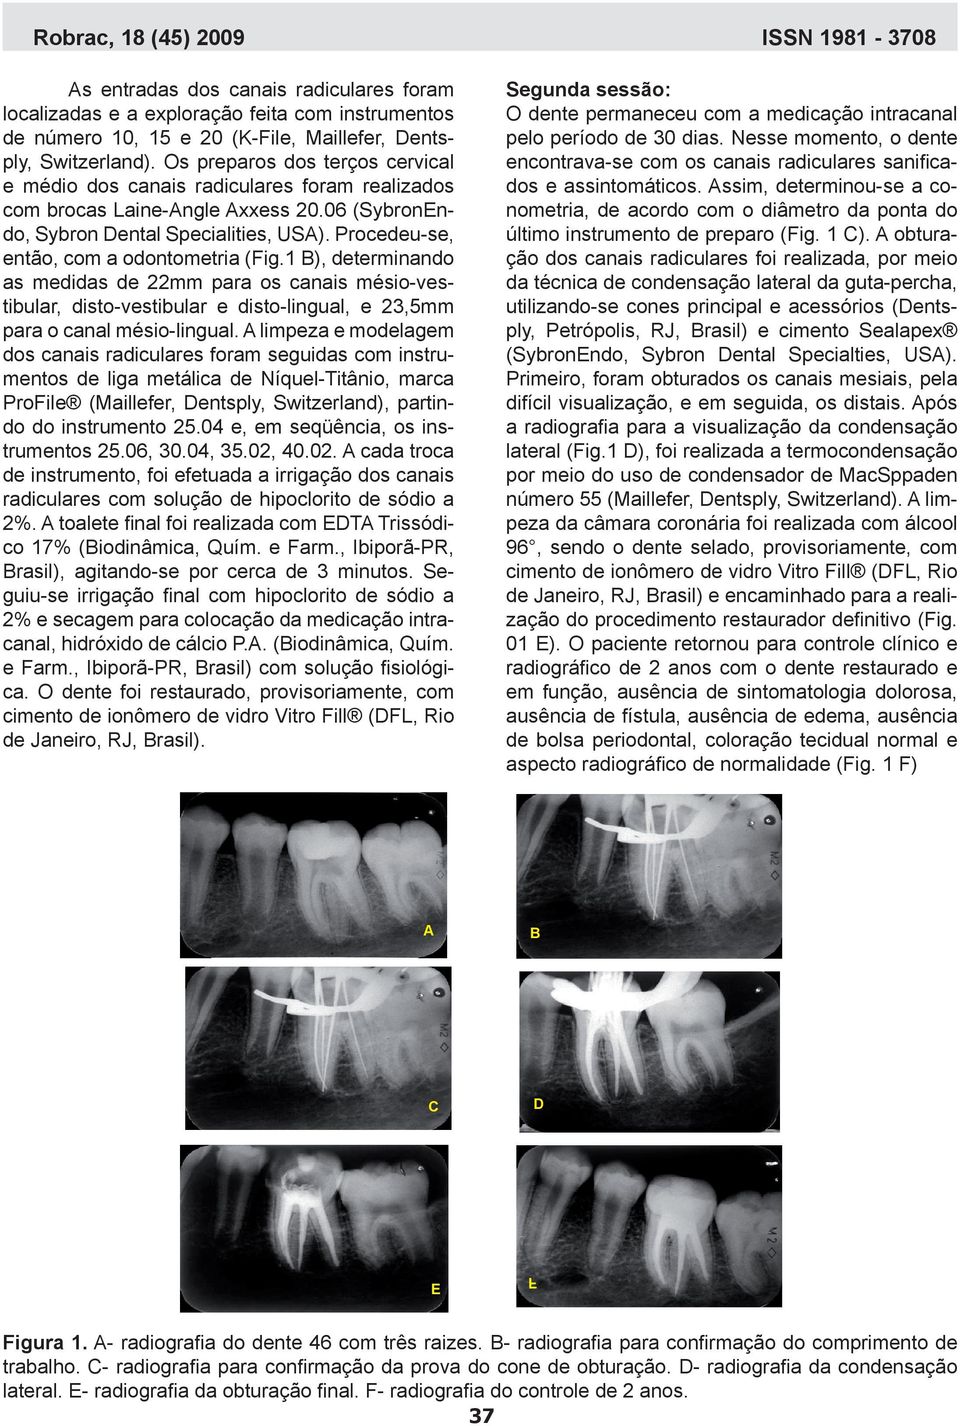 Procedeu-se, então, com a odontometria (Fig.1 B), determinando as medidas de 22mm para os canais mésio-vestibular, disto-vestibular e disto-lingual, e 23,5mm para o canal mésio-lingual.